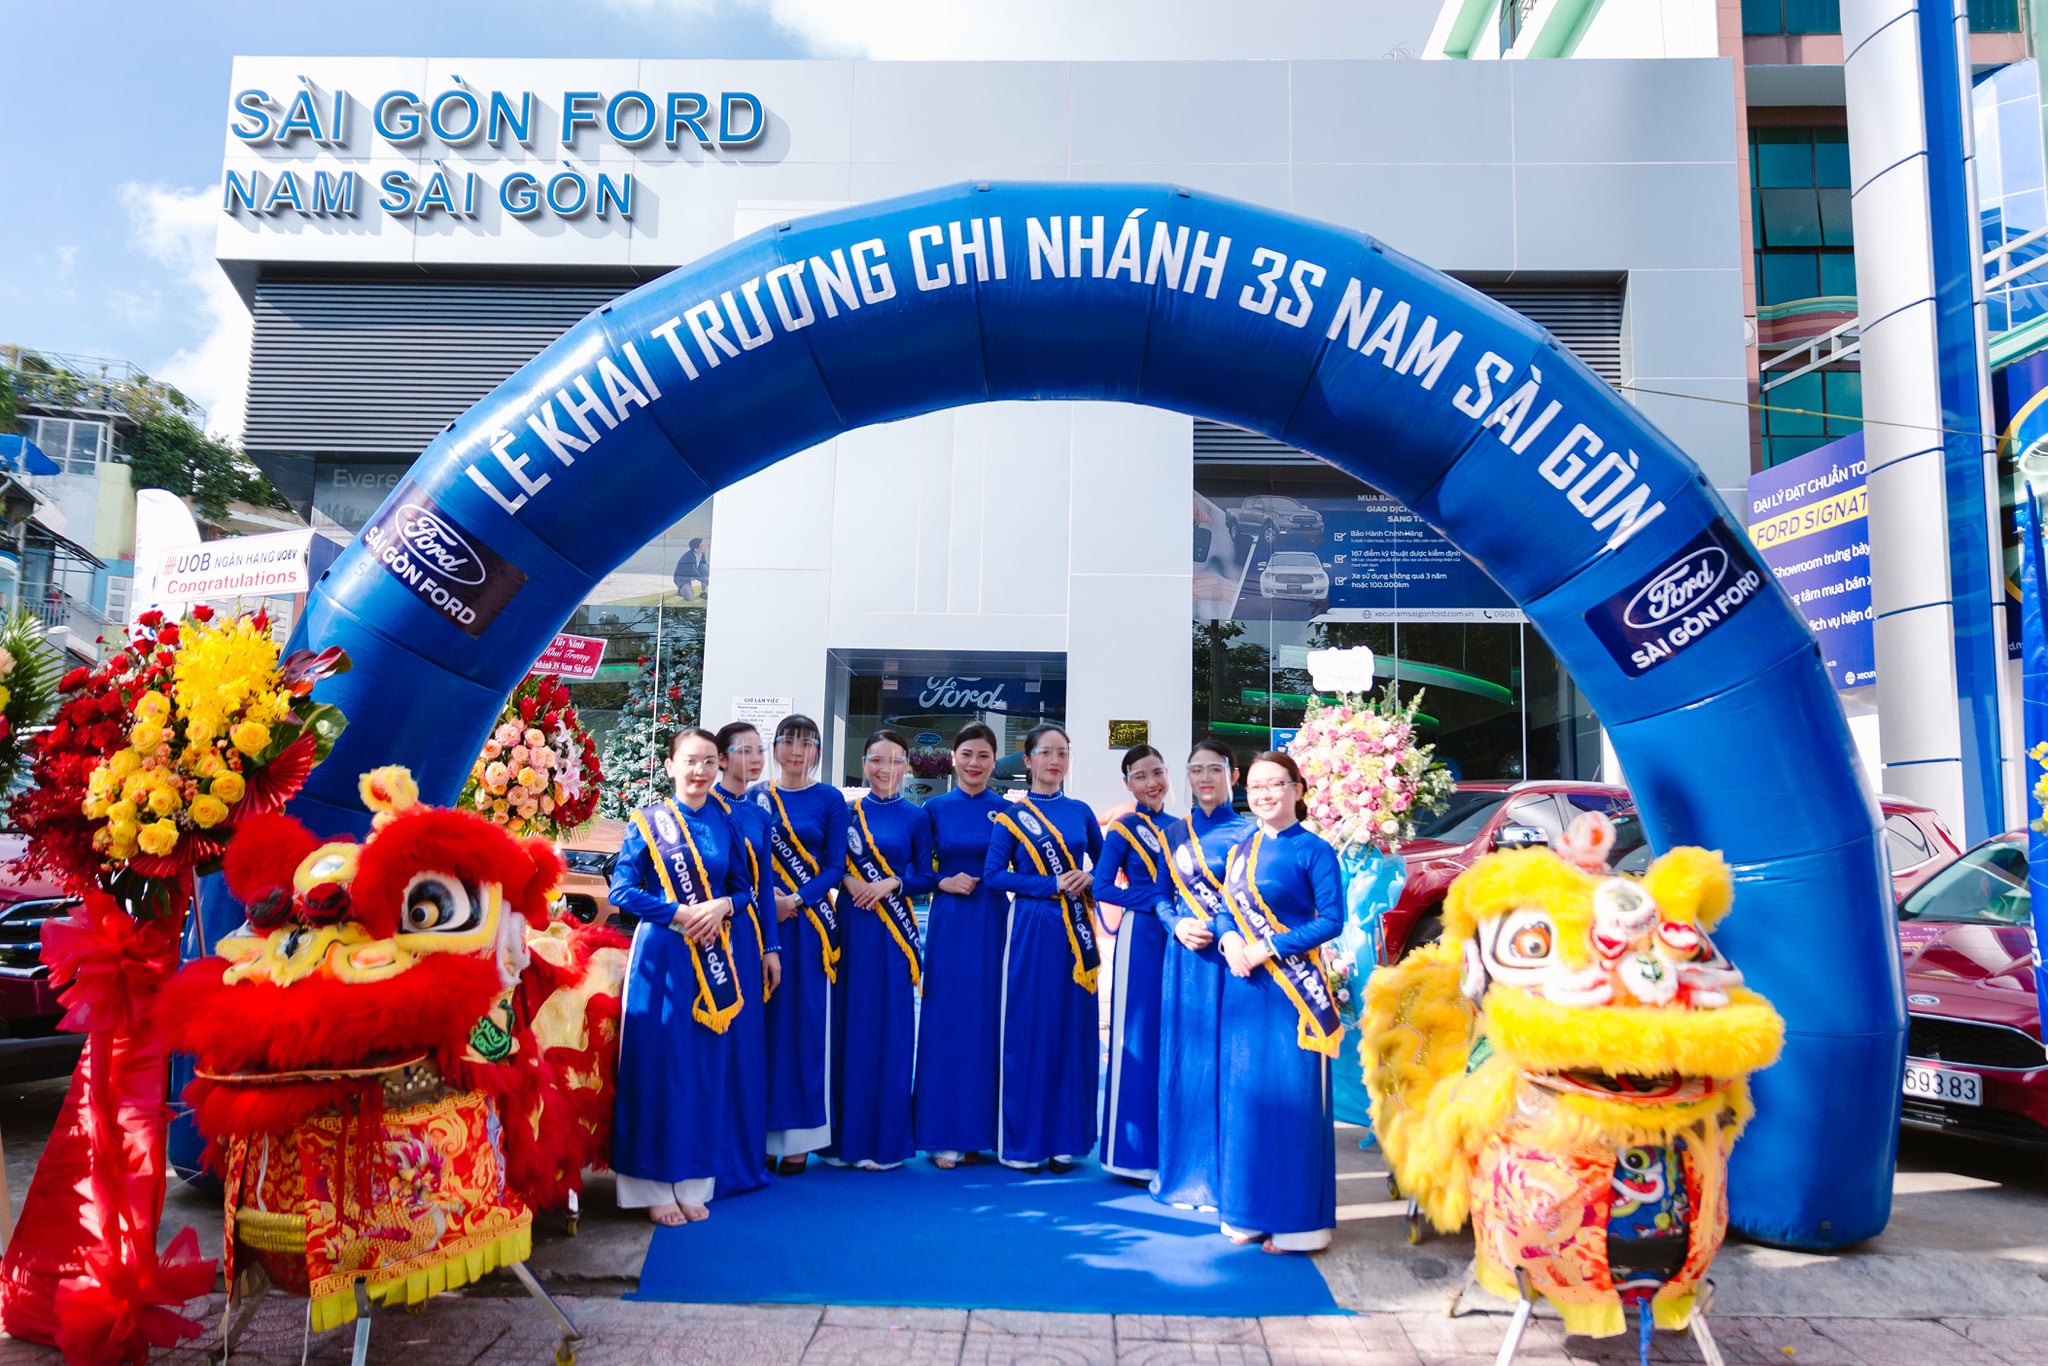 Sài Gòn Ford chi nhánh Nam Sài Gòn chính thức khai trương